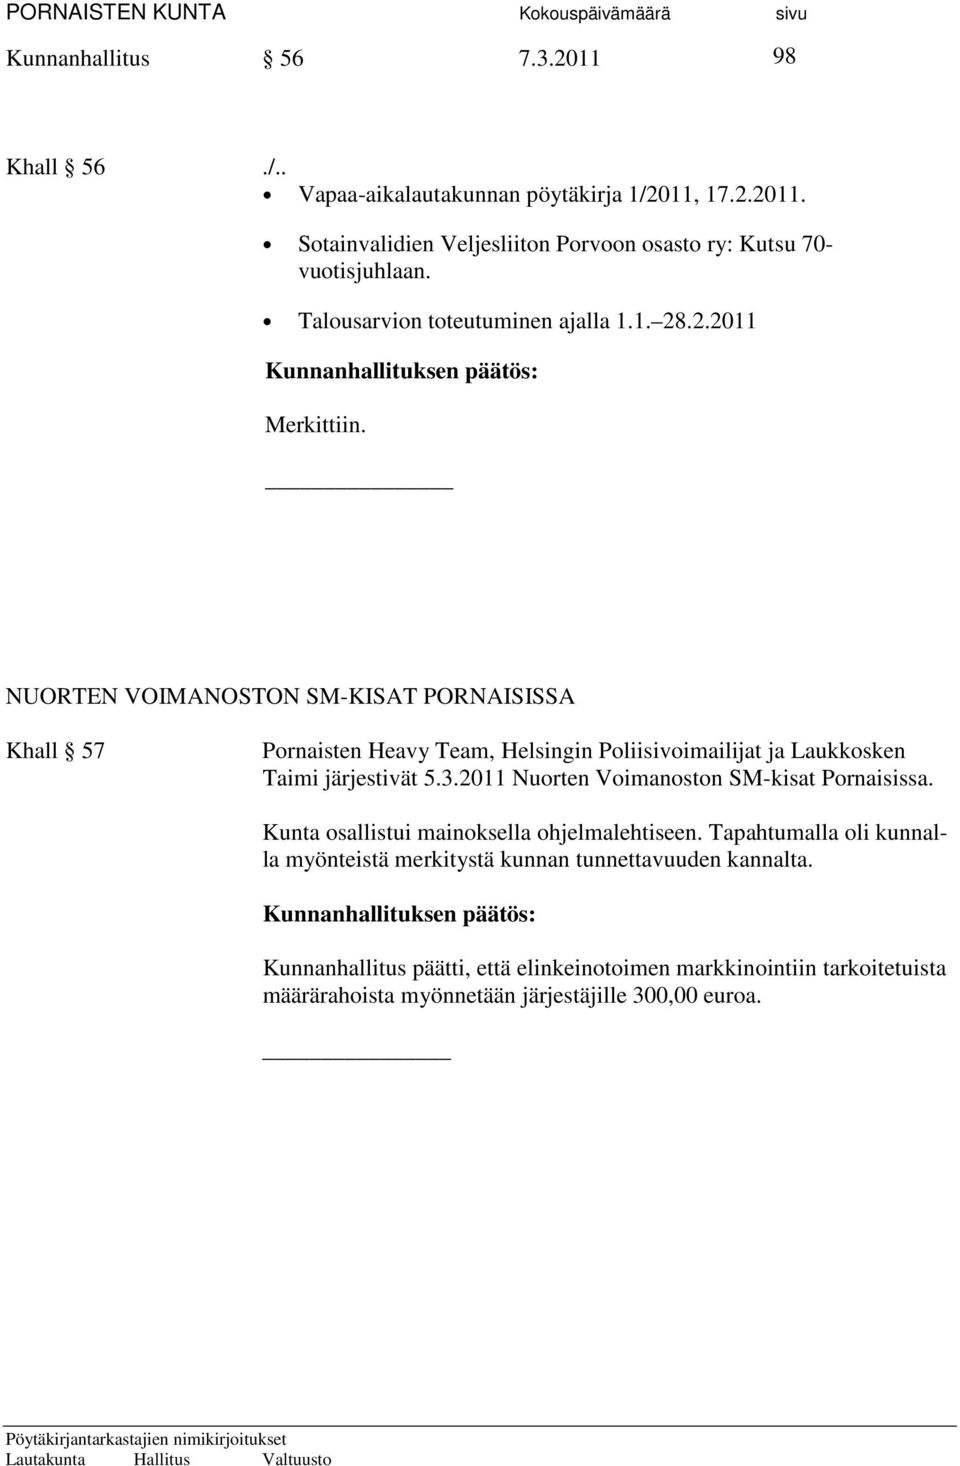 NUORTEN VOIMANOSTON SM-KISAT PORNAISISSA Khall 57 Pornaisten Heavy Team, Helsingin Poliisivoimailijat ja Laukkosken Taimi järjestivät 5.3.